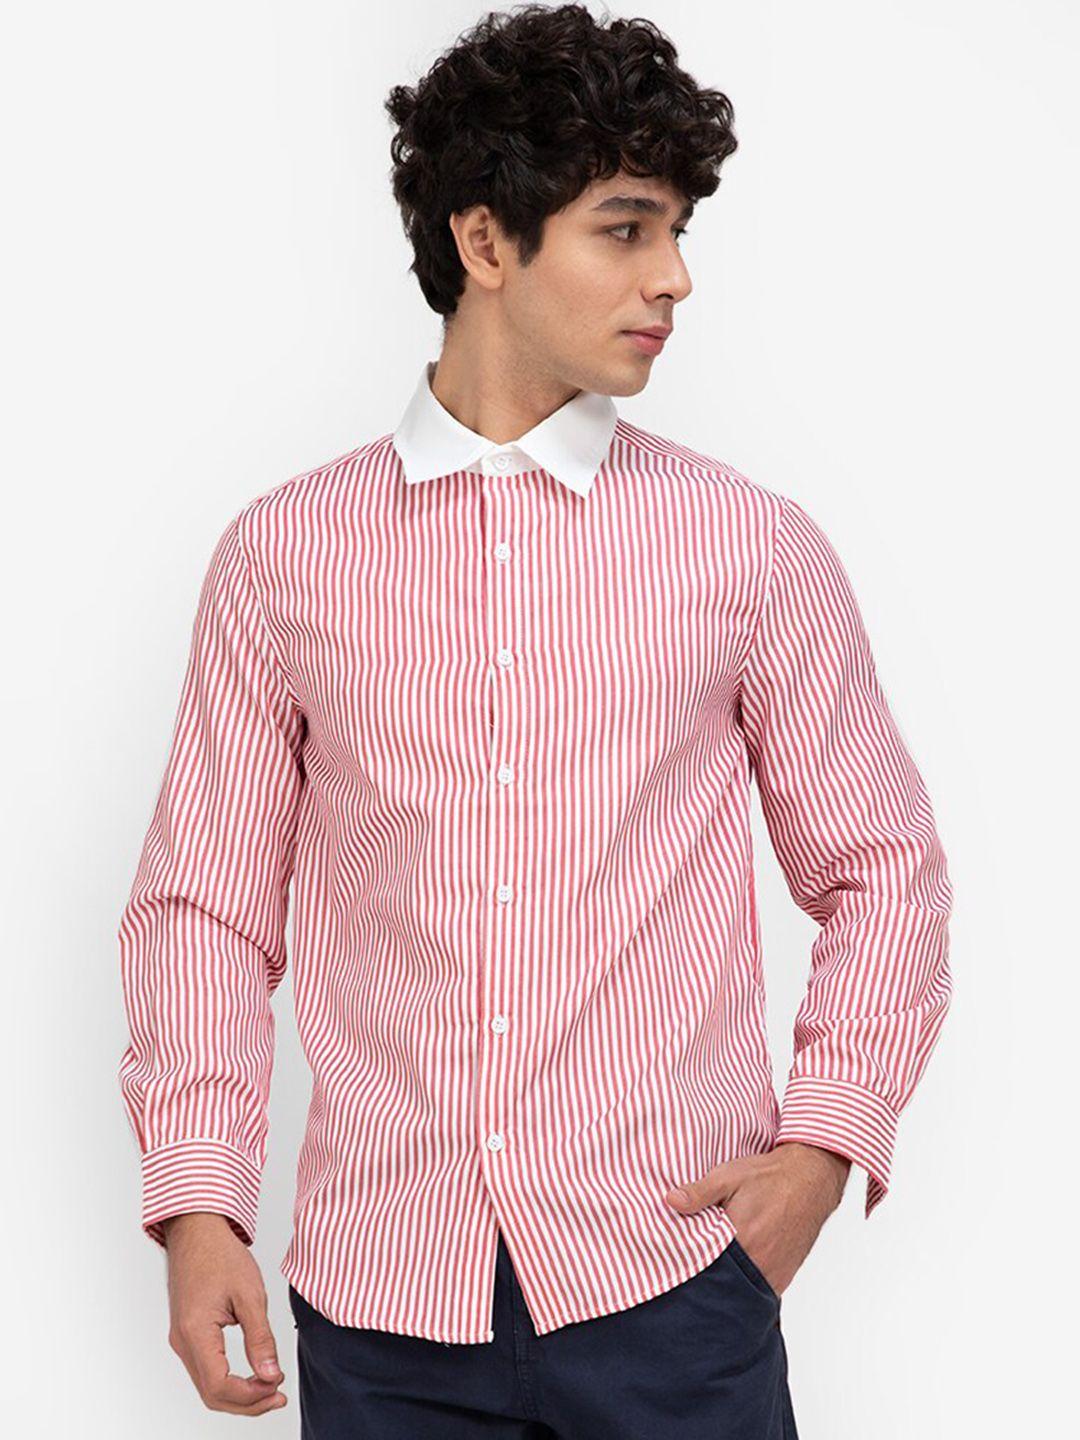 zalora basics men white & red striped casual shirt